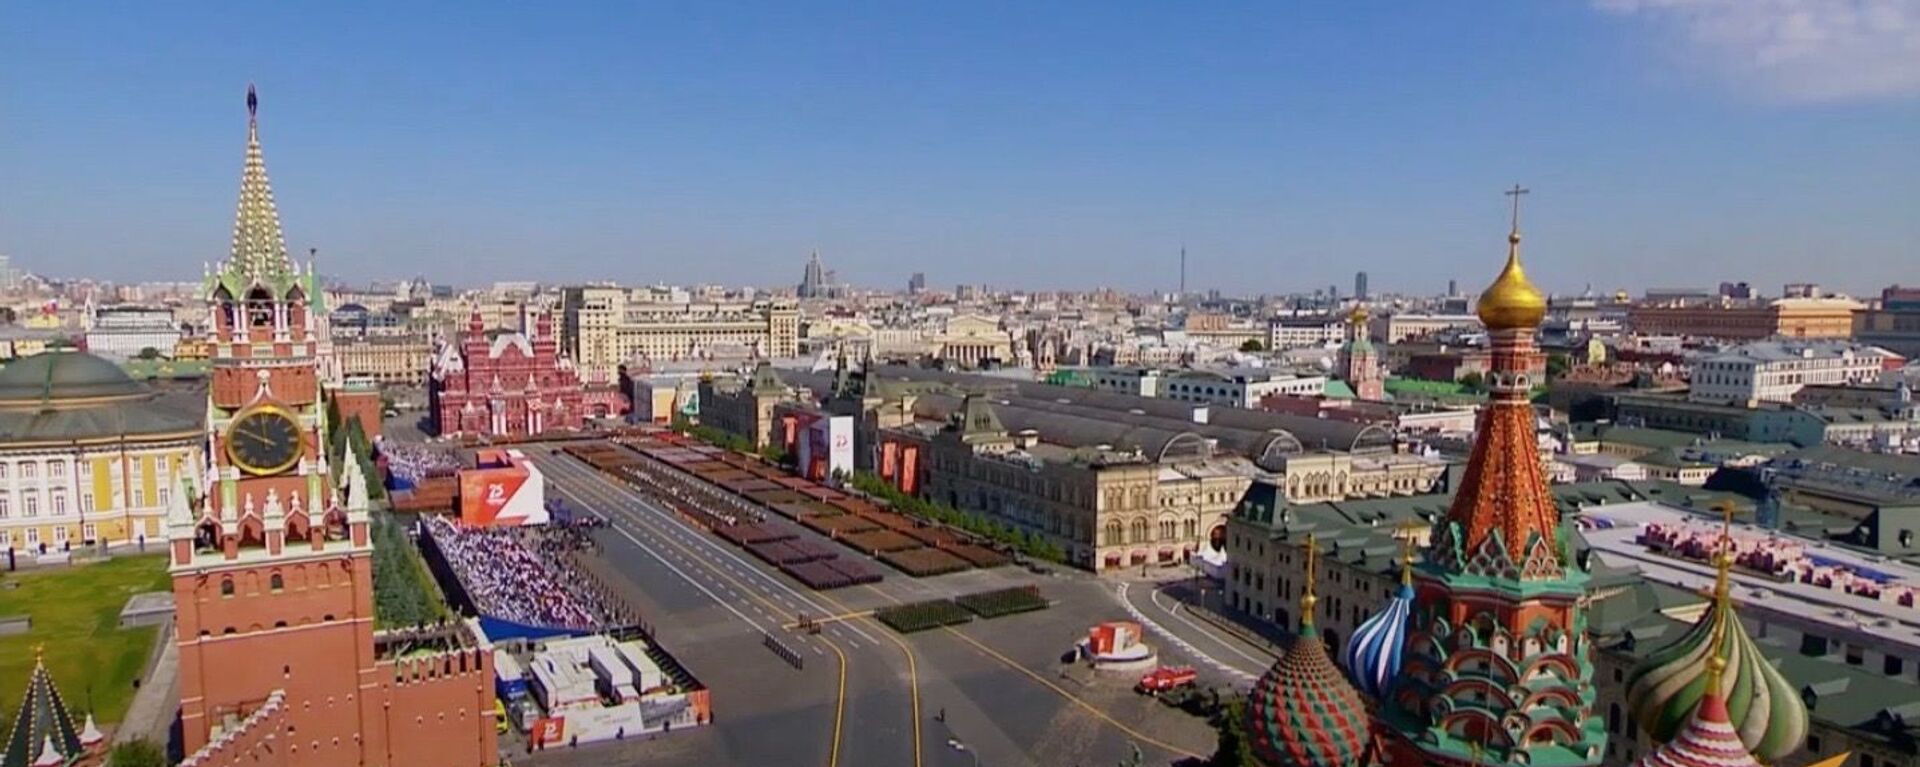 Как прошел парад Победы в Москве - Sputnik Узбекистан, 1920, 08.05.2021